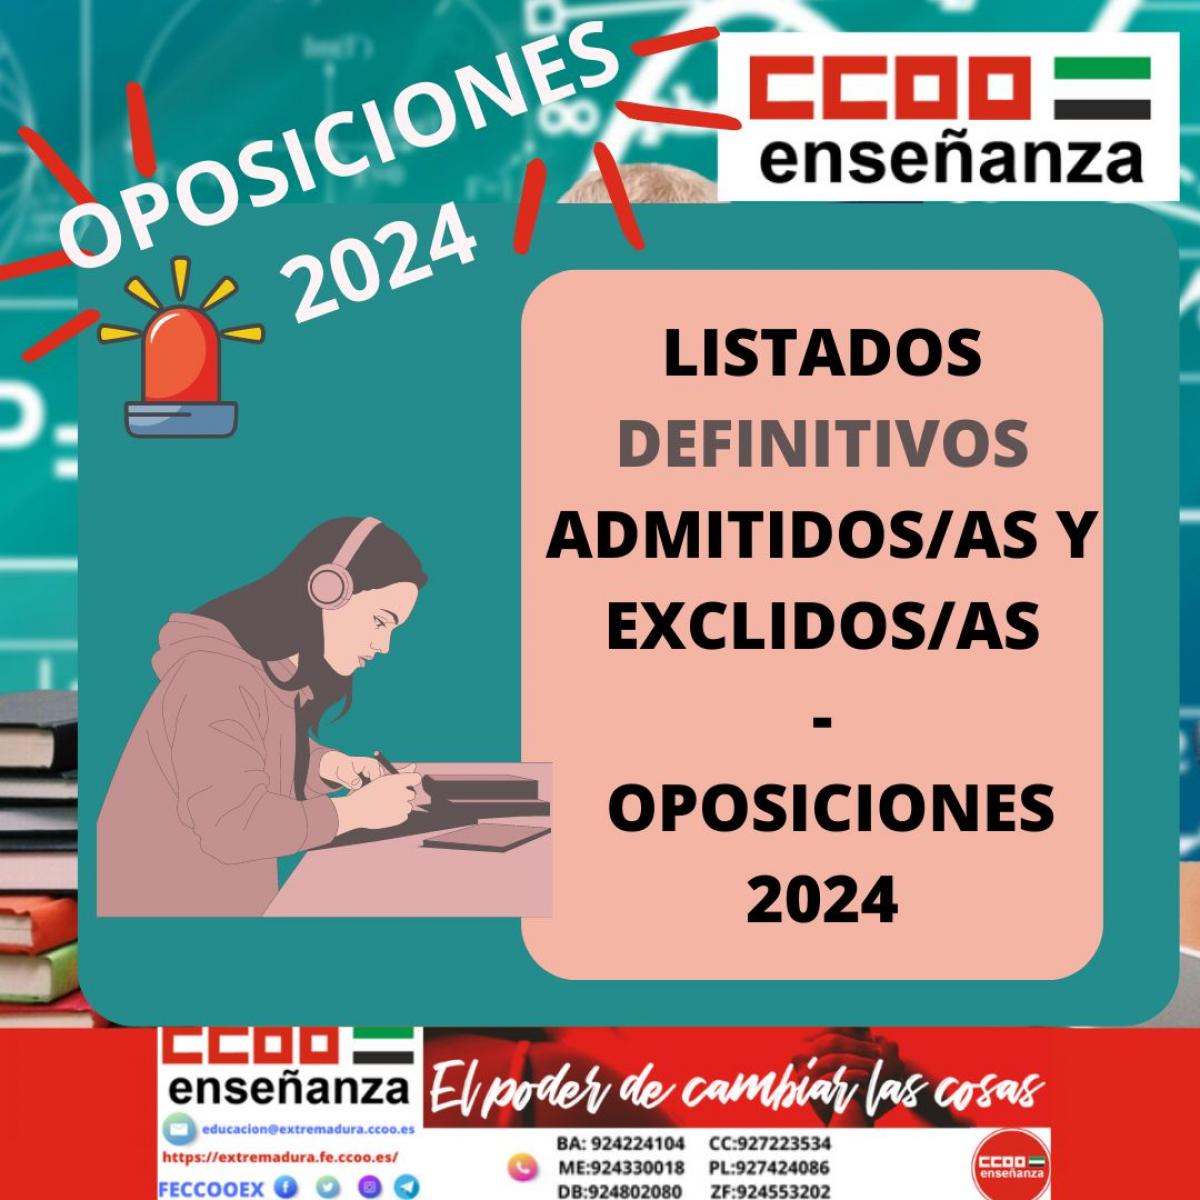 LISTADOS DEFINITIVOS DE ASPIRANTES OPOSICIONES 2024